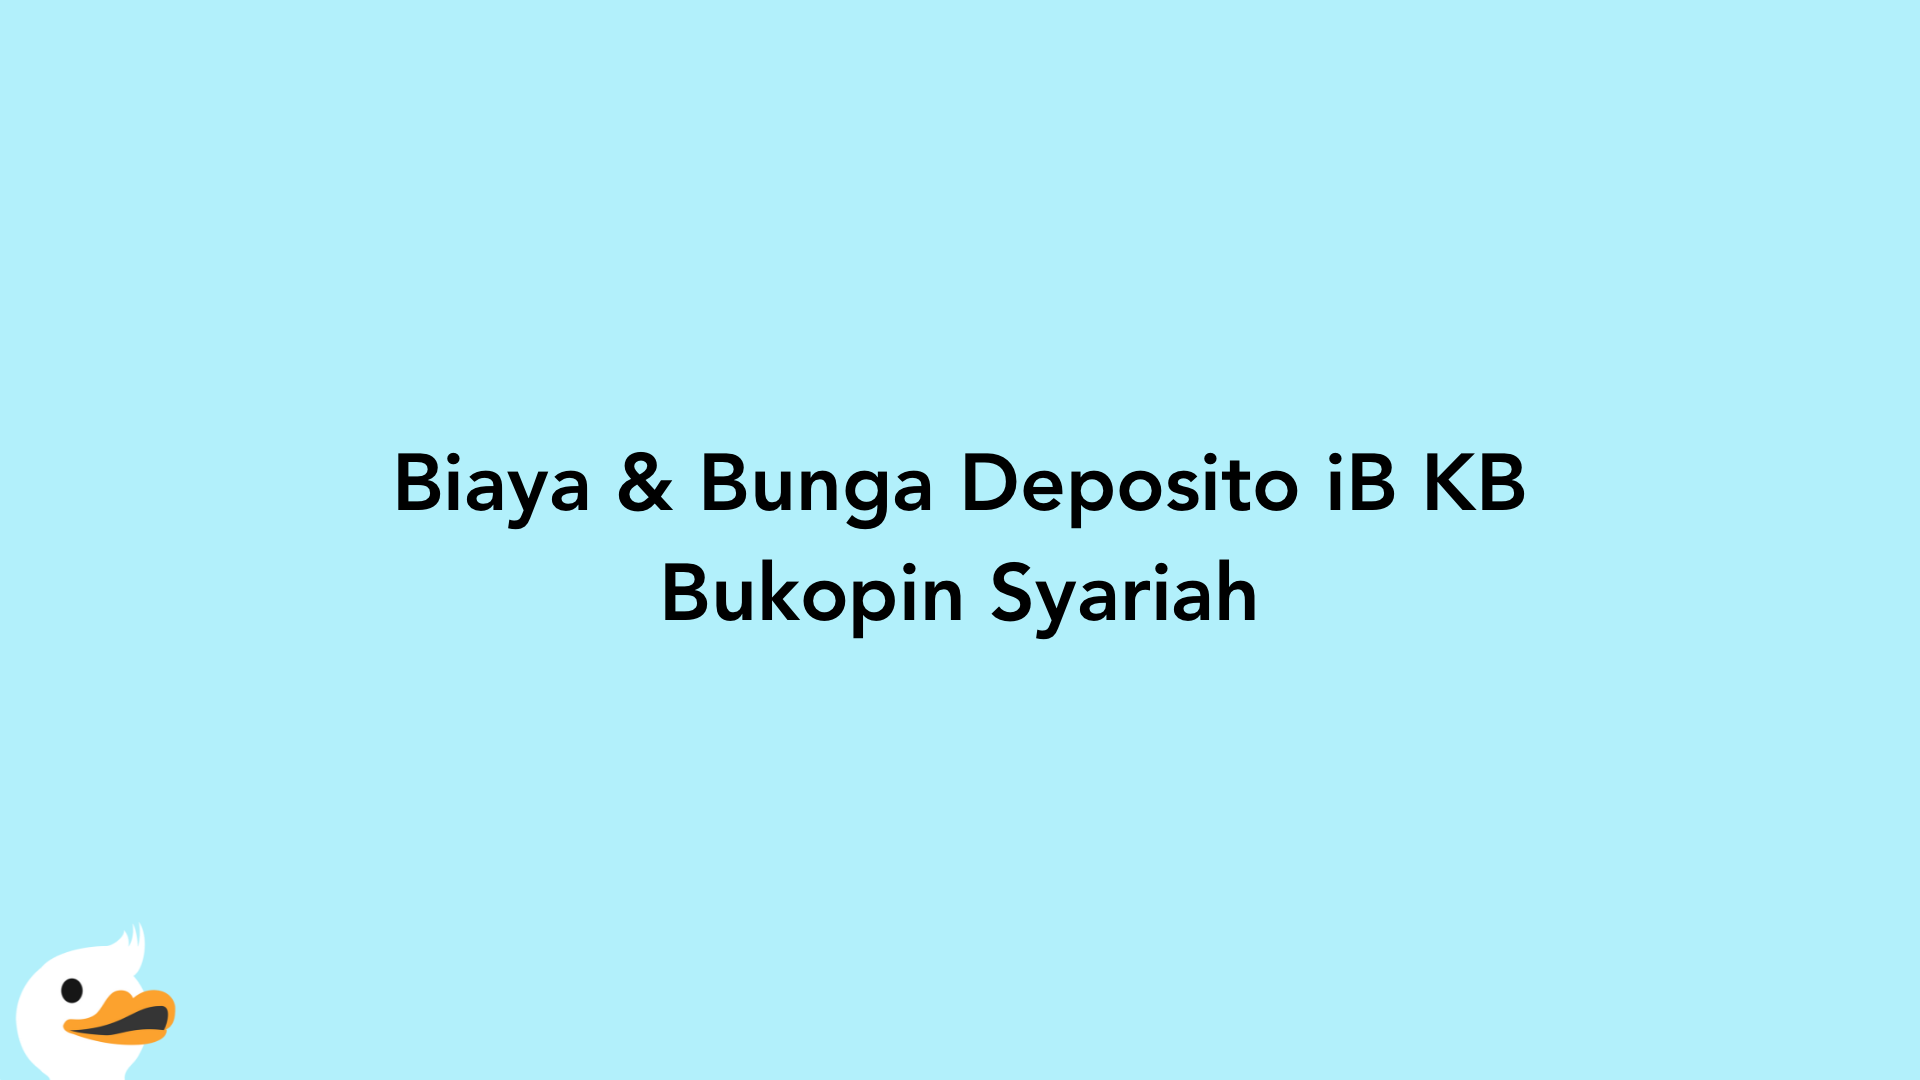 Biaya & Bunga Deposito iB KB Bukopin Syariah